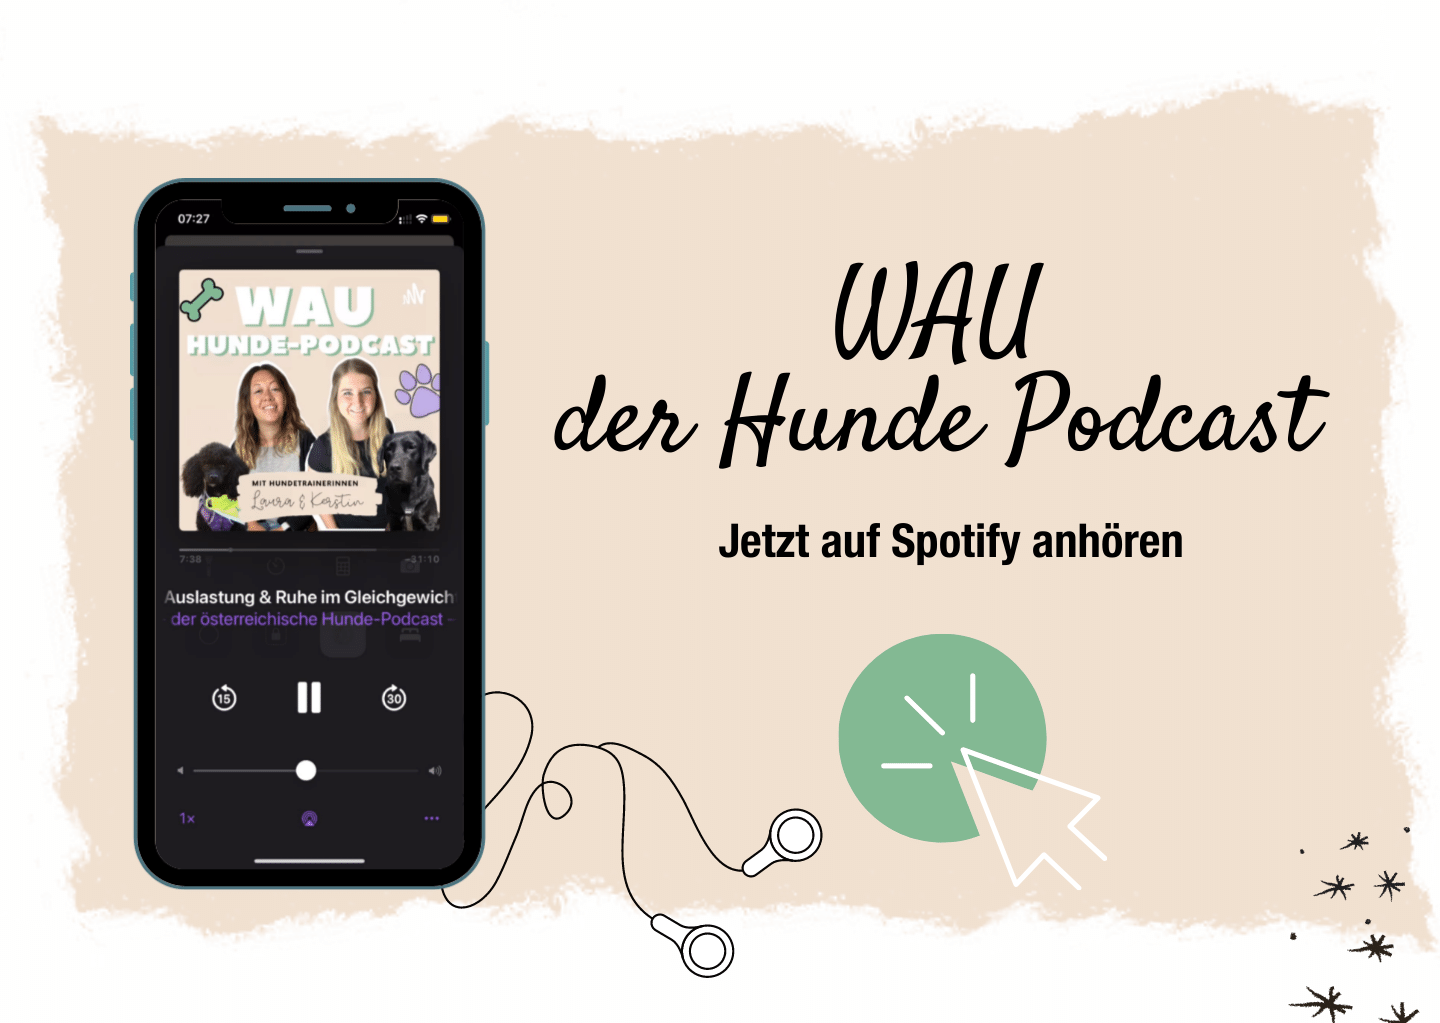 wau-hundepodcast-spotify-anhoeren-podcast